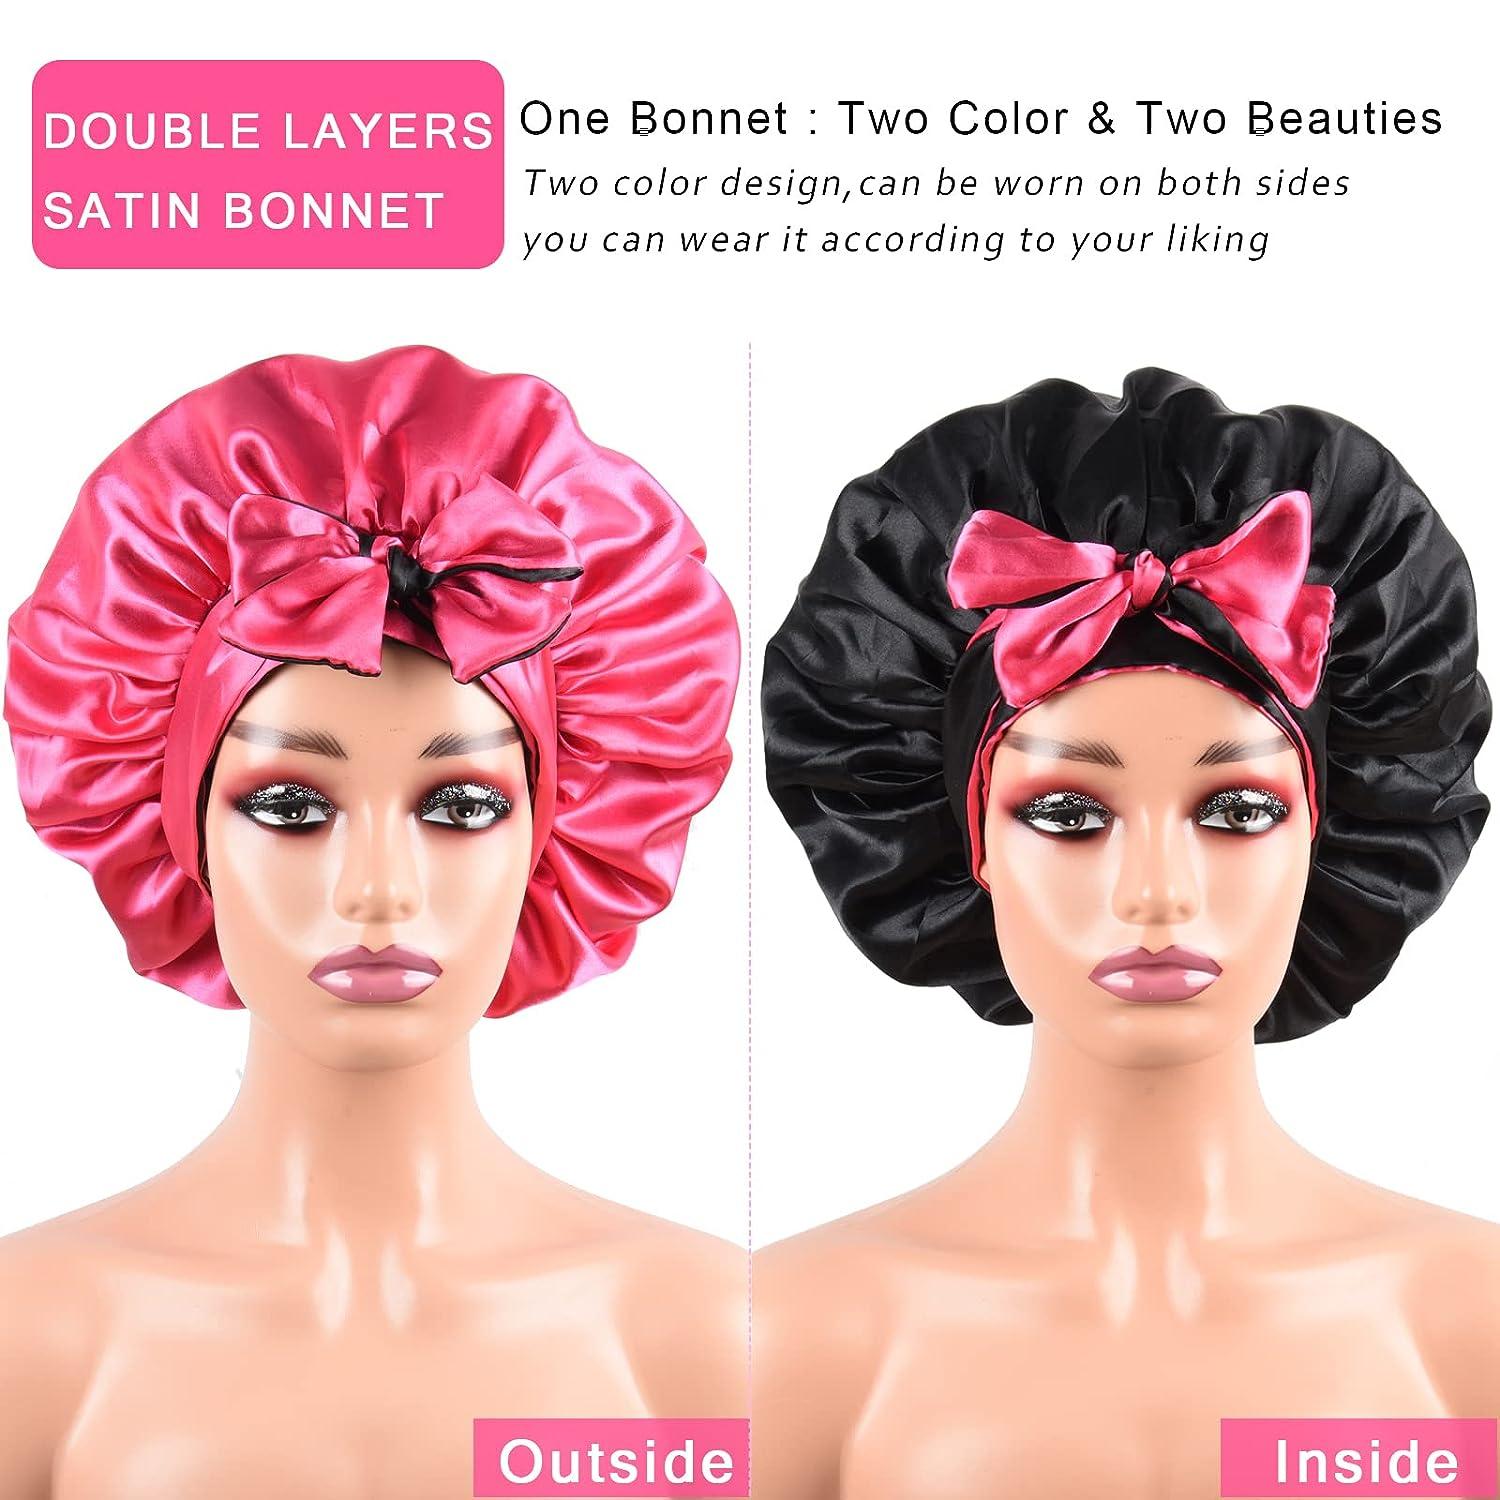 BONNET QUEEN Silk Bonnet for Sleeping Satin Bonnet Hair Bonnet Tie Bonnet  for Women with Stretch Band Natural Hair Curly Hair Hot Pink